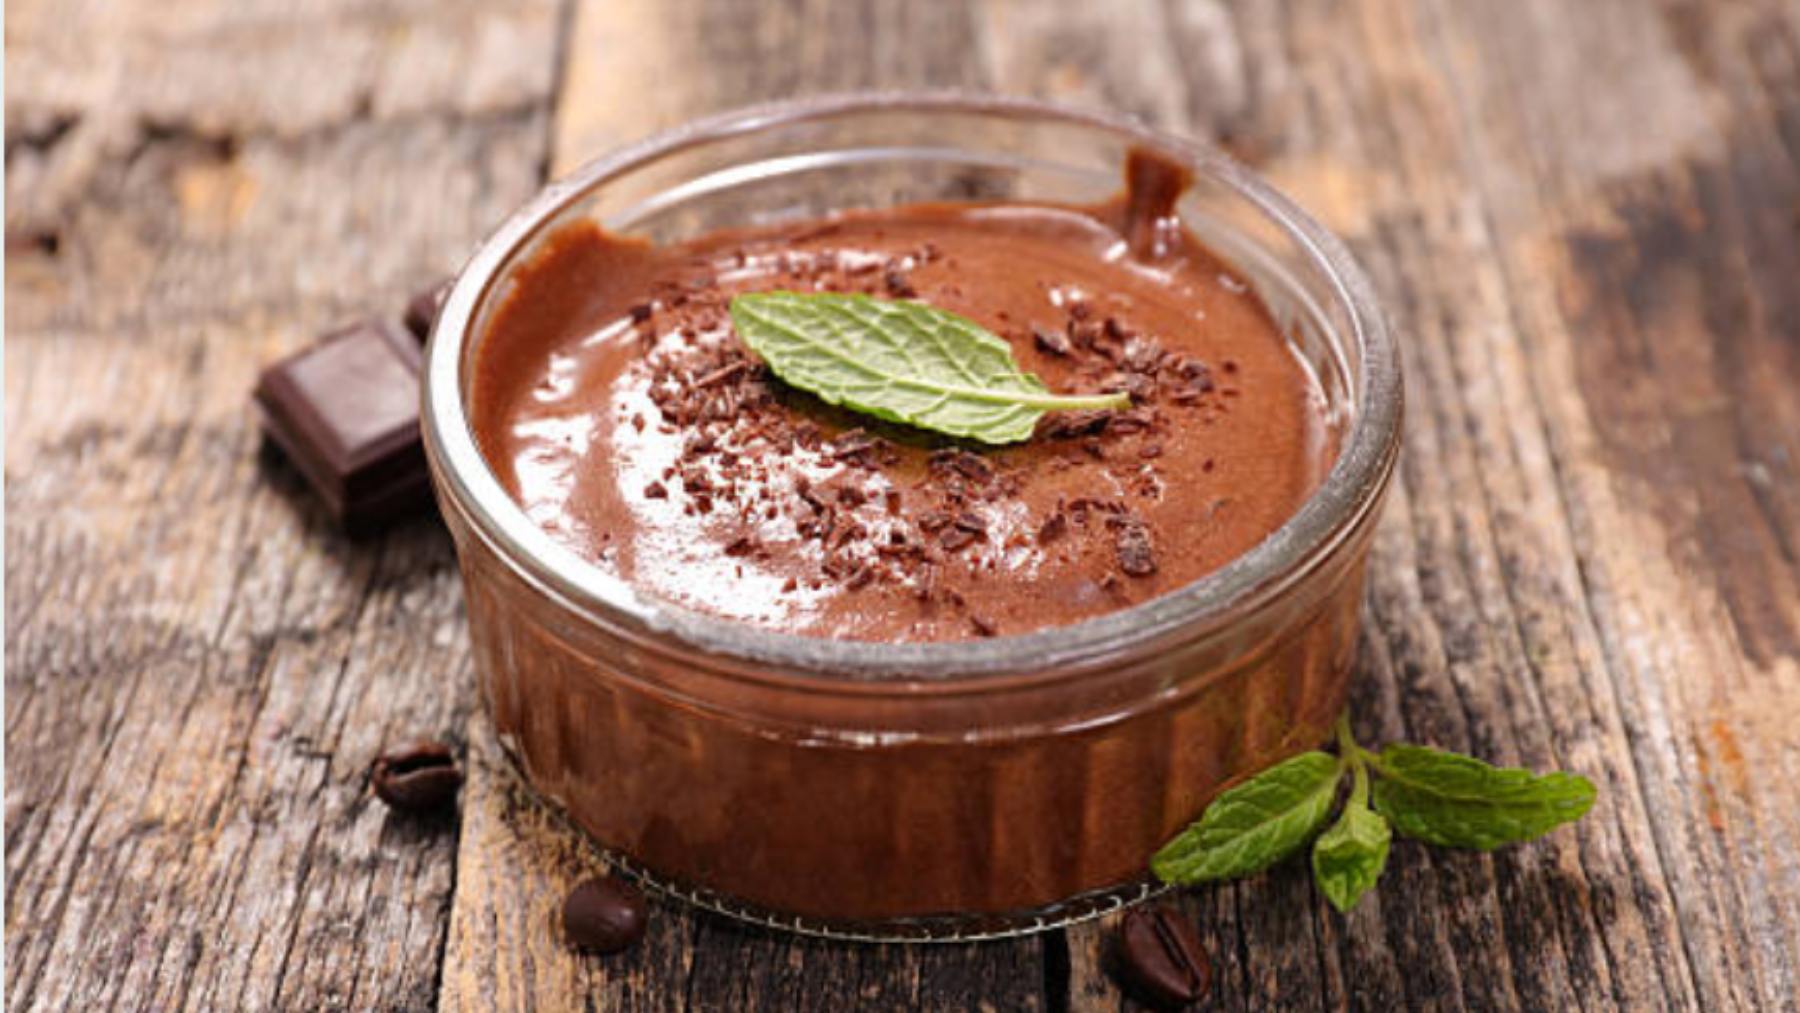 La receta de natillas caseras de chocolate más sana y rica 4